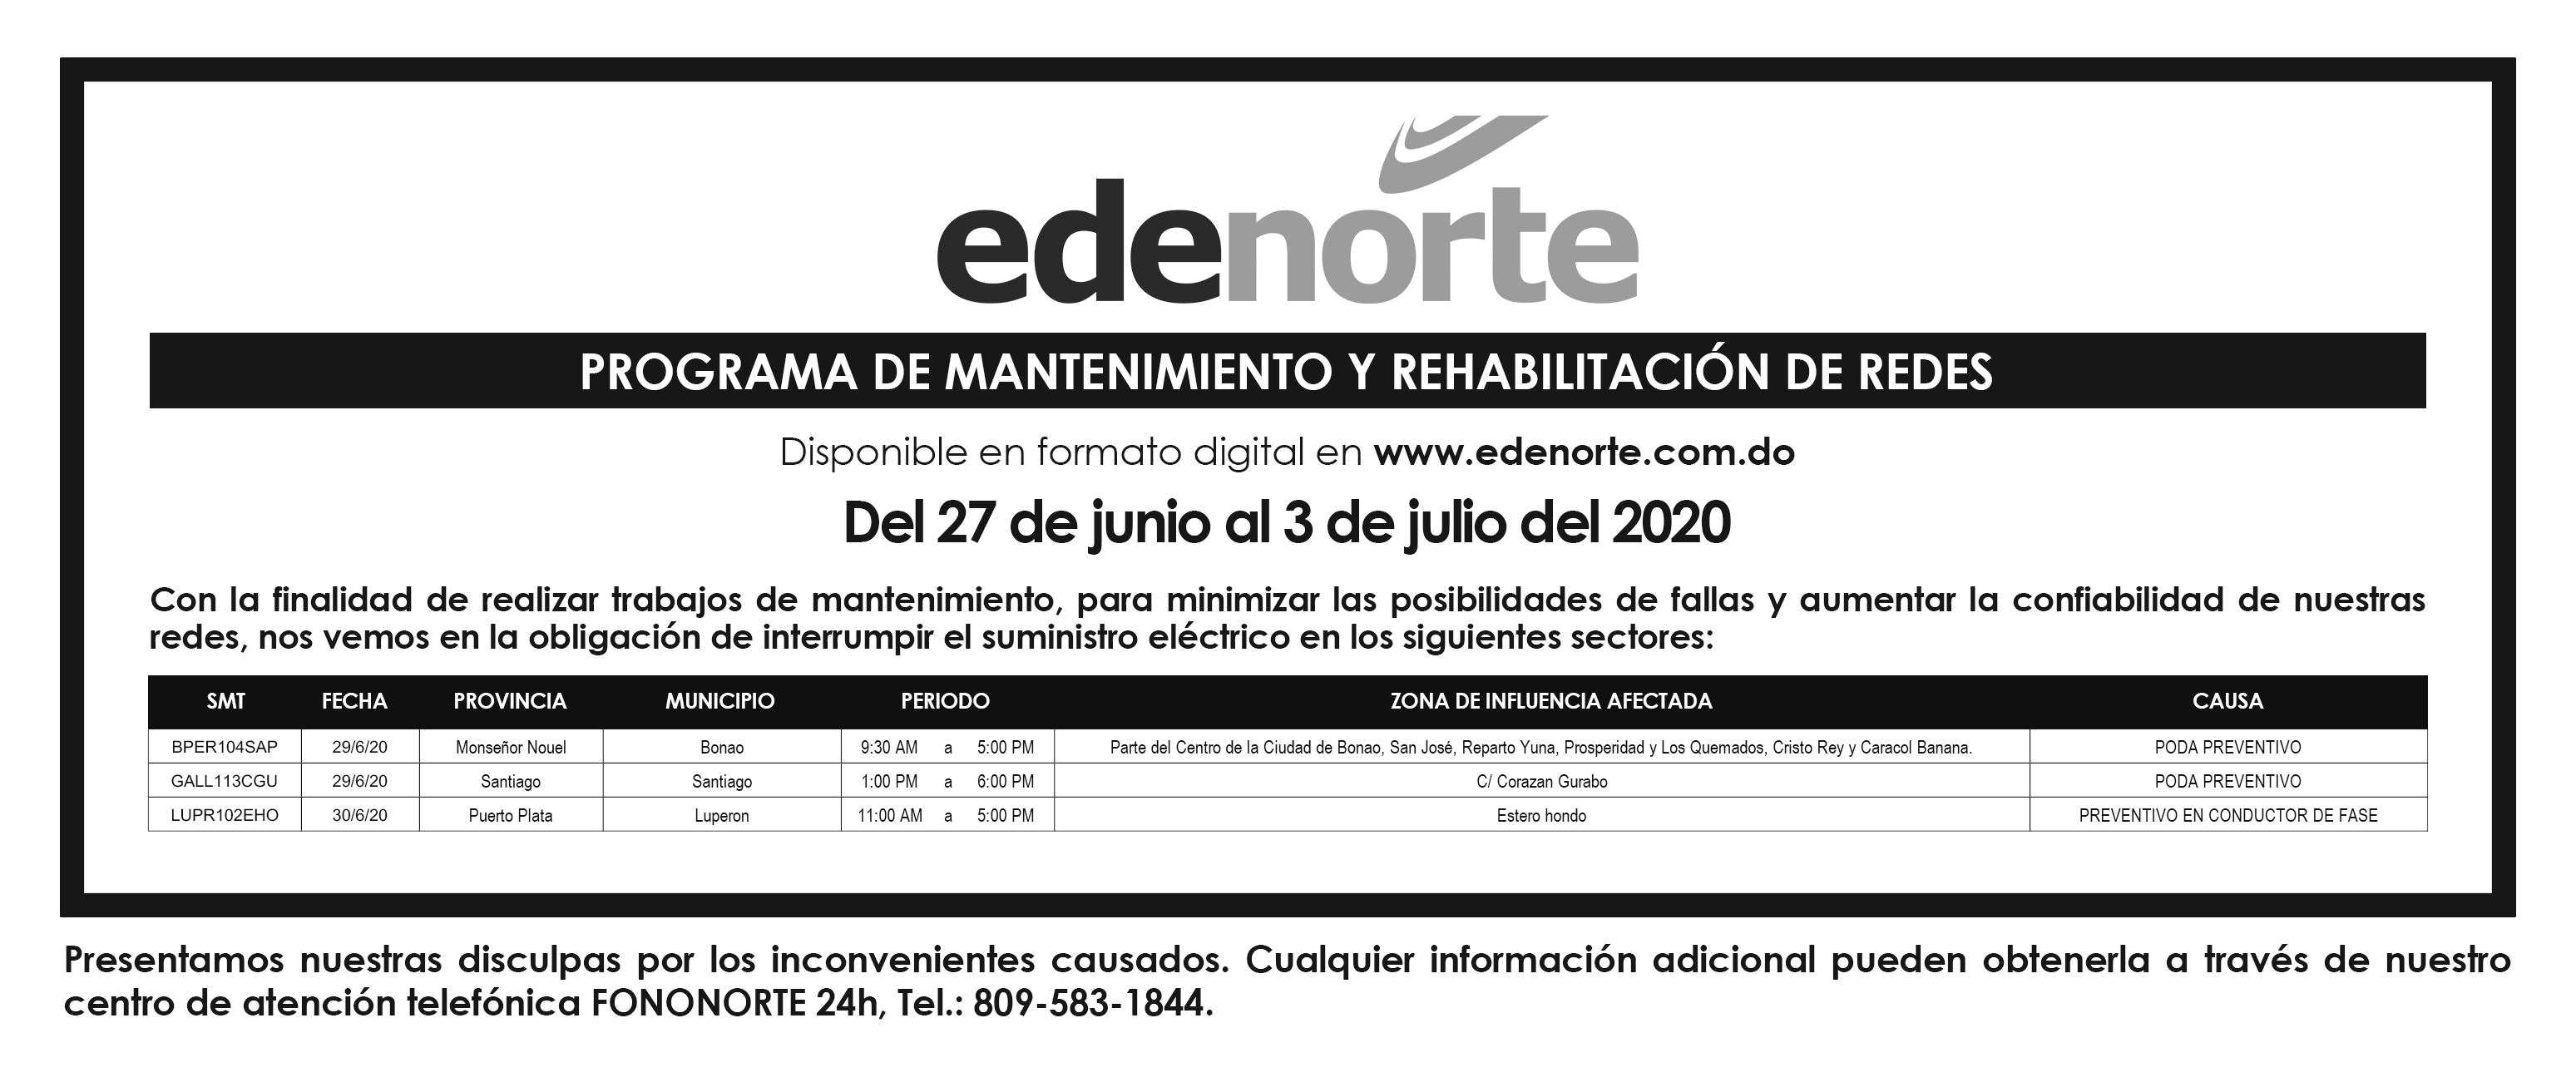 Programa de Mantenimiento de Redes EDENORTE, del 27 de junio al 3 de julio 2020